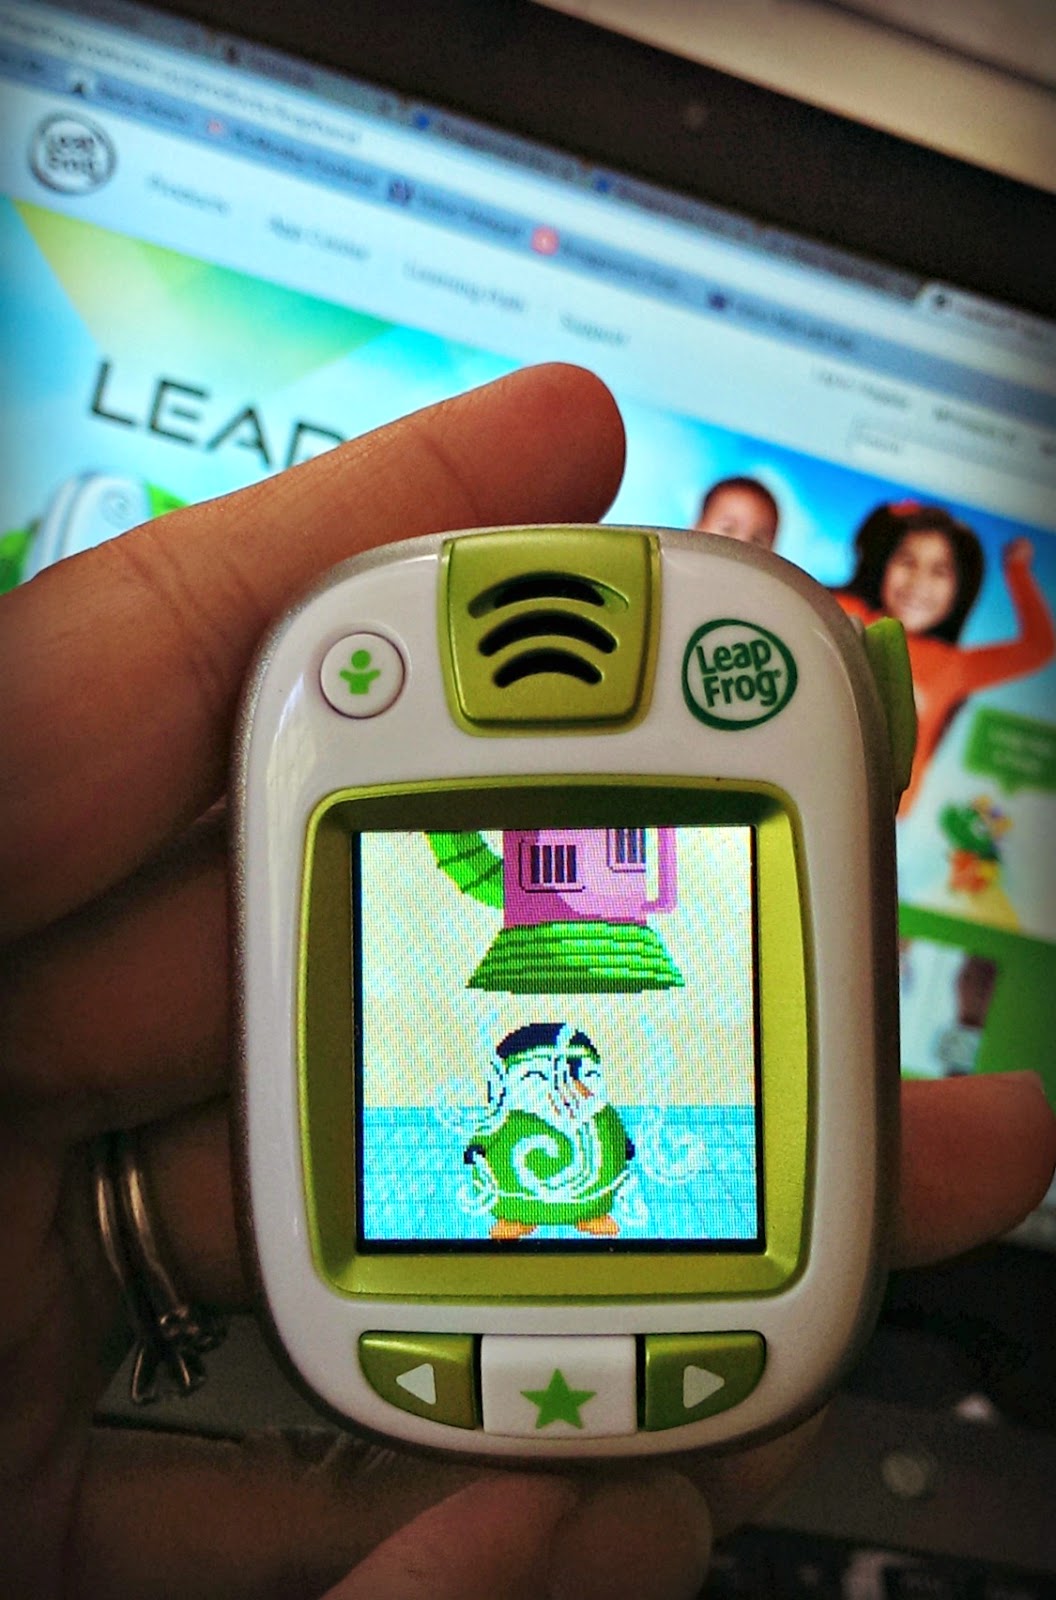 Leapfrog Leapband fitness activity tracker for kids